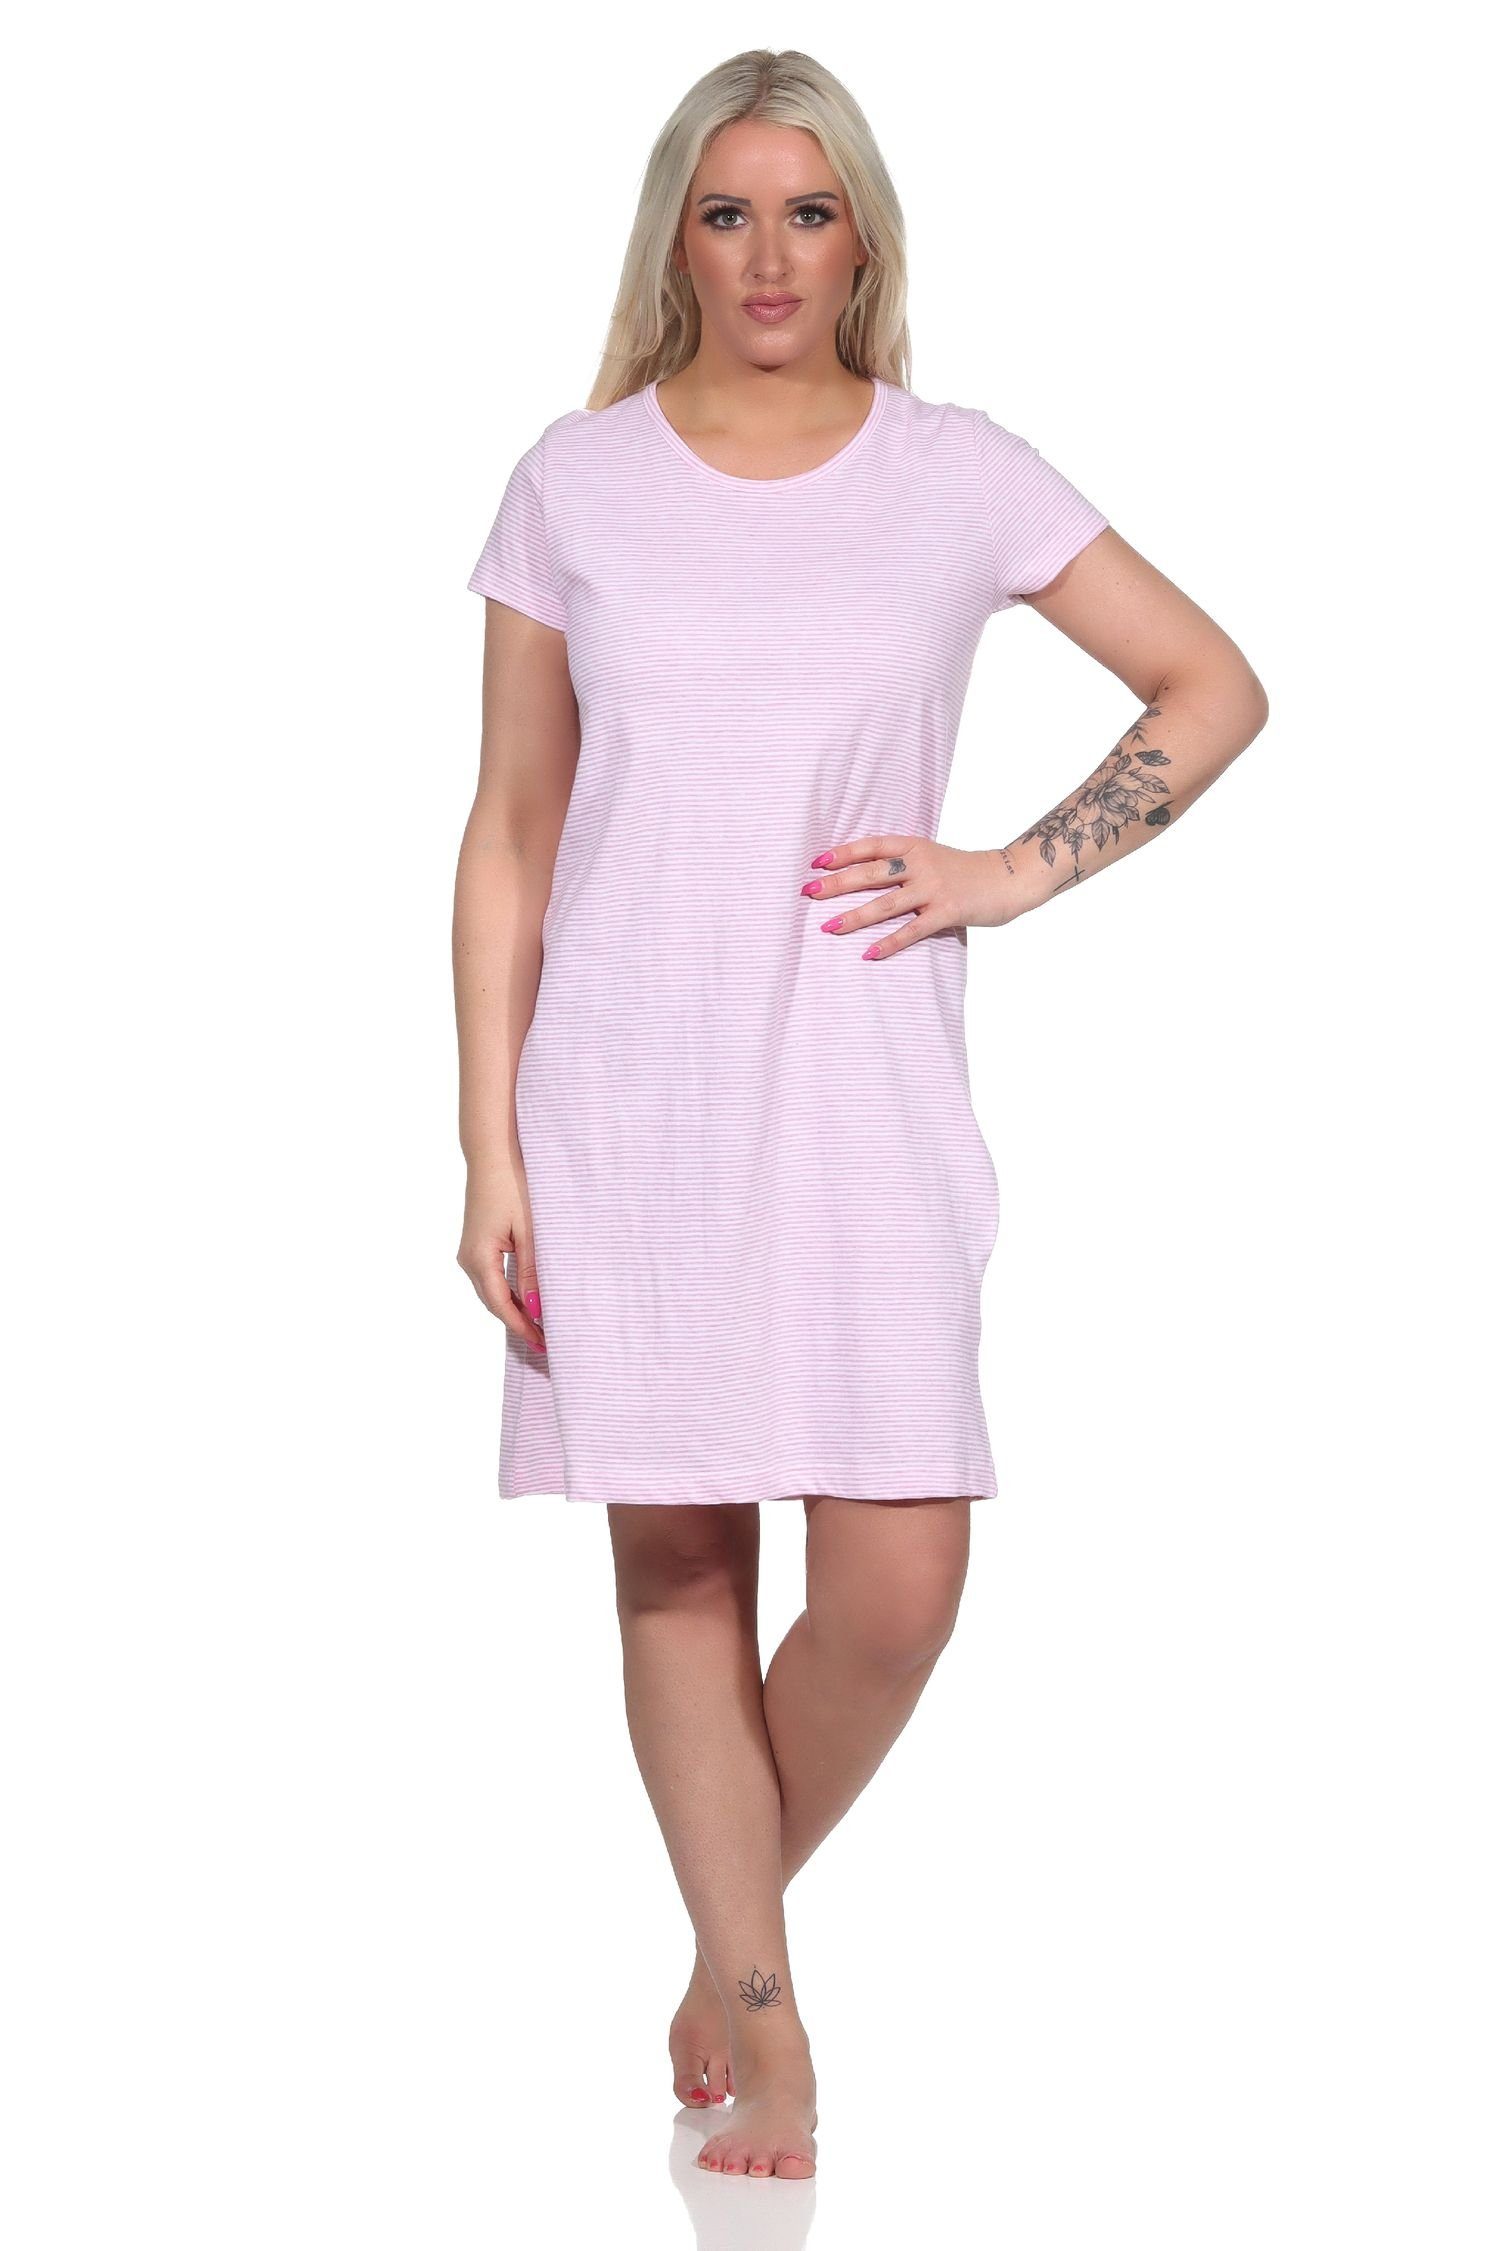 Normann Nachthemd Wunderschönes Damen Nachthemd kurzarm in feiner Ringeloptik - 122 903 rosa